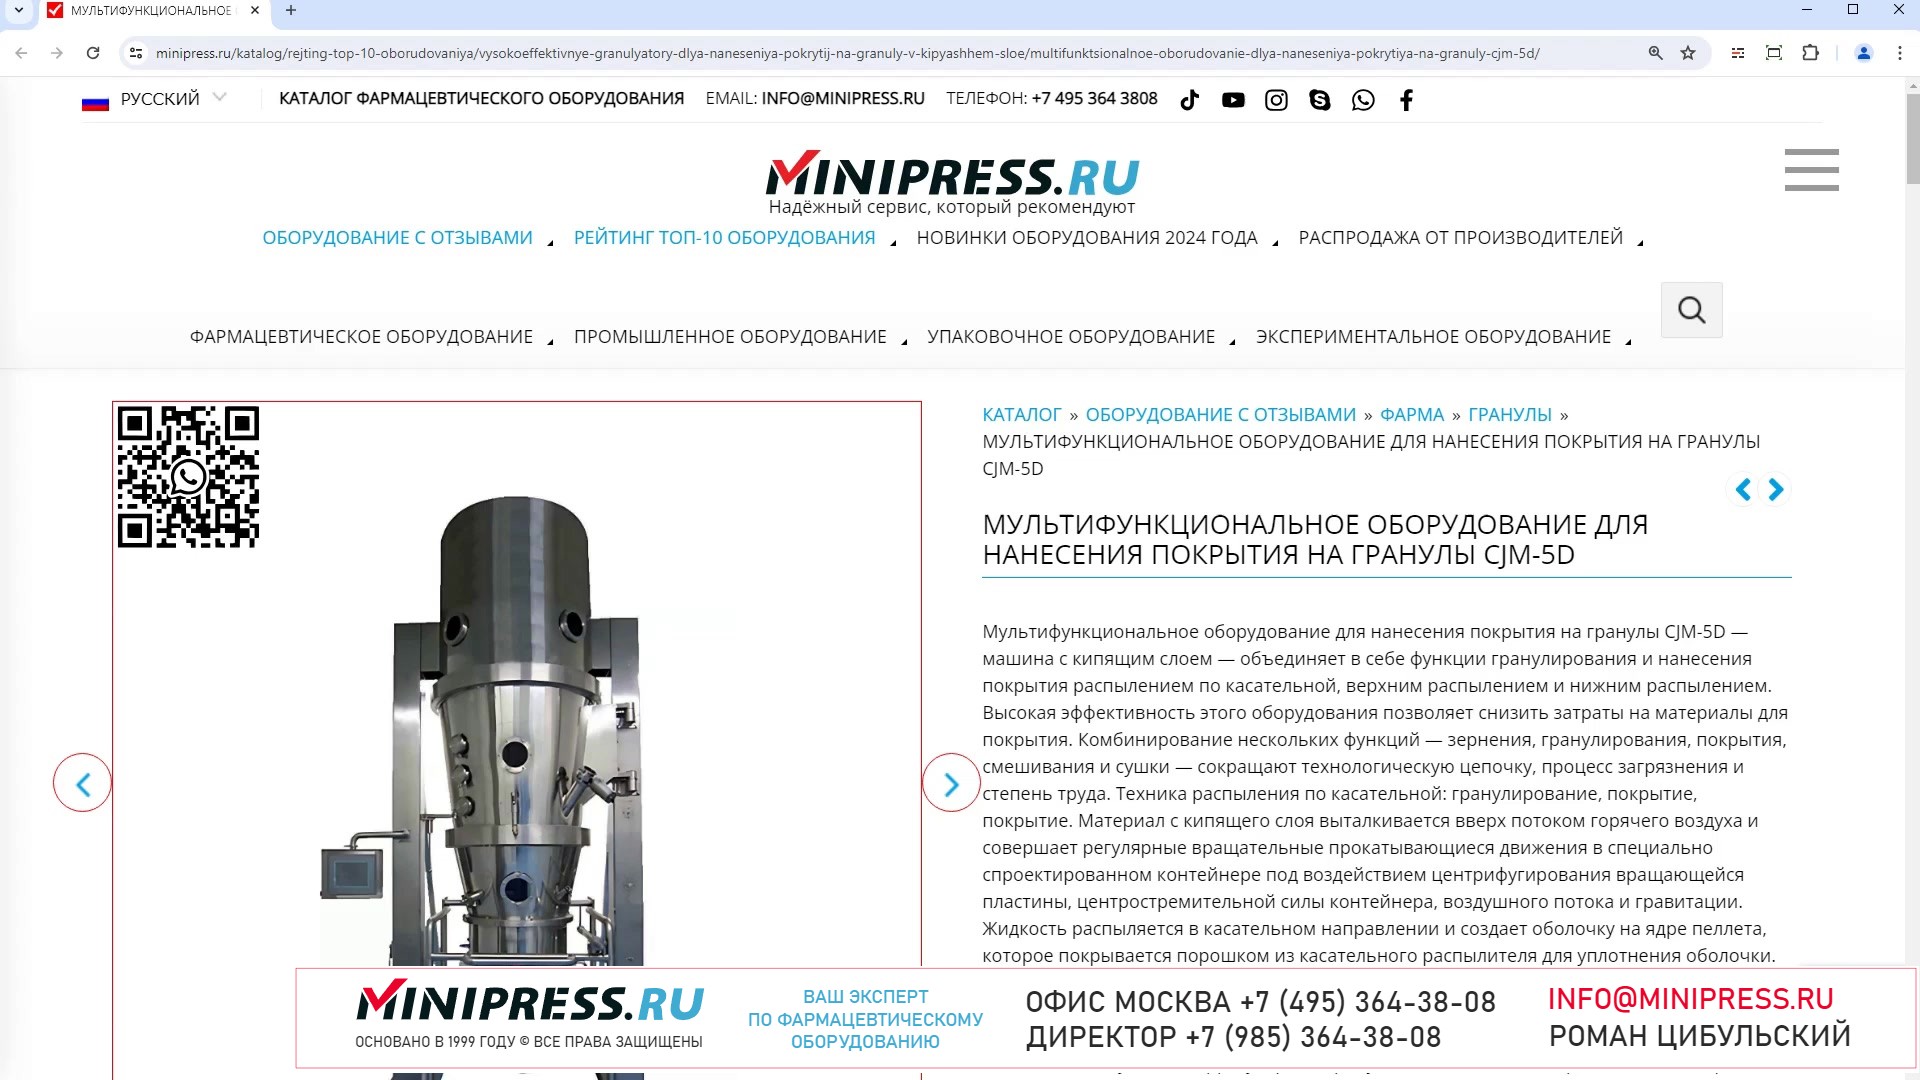 Minipress.ru Мультифункциональное оборудование для нанесения покрытия на гранулы CJM-5D